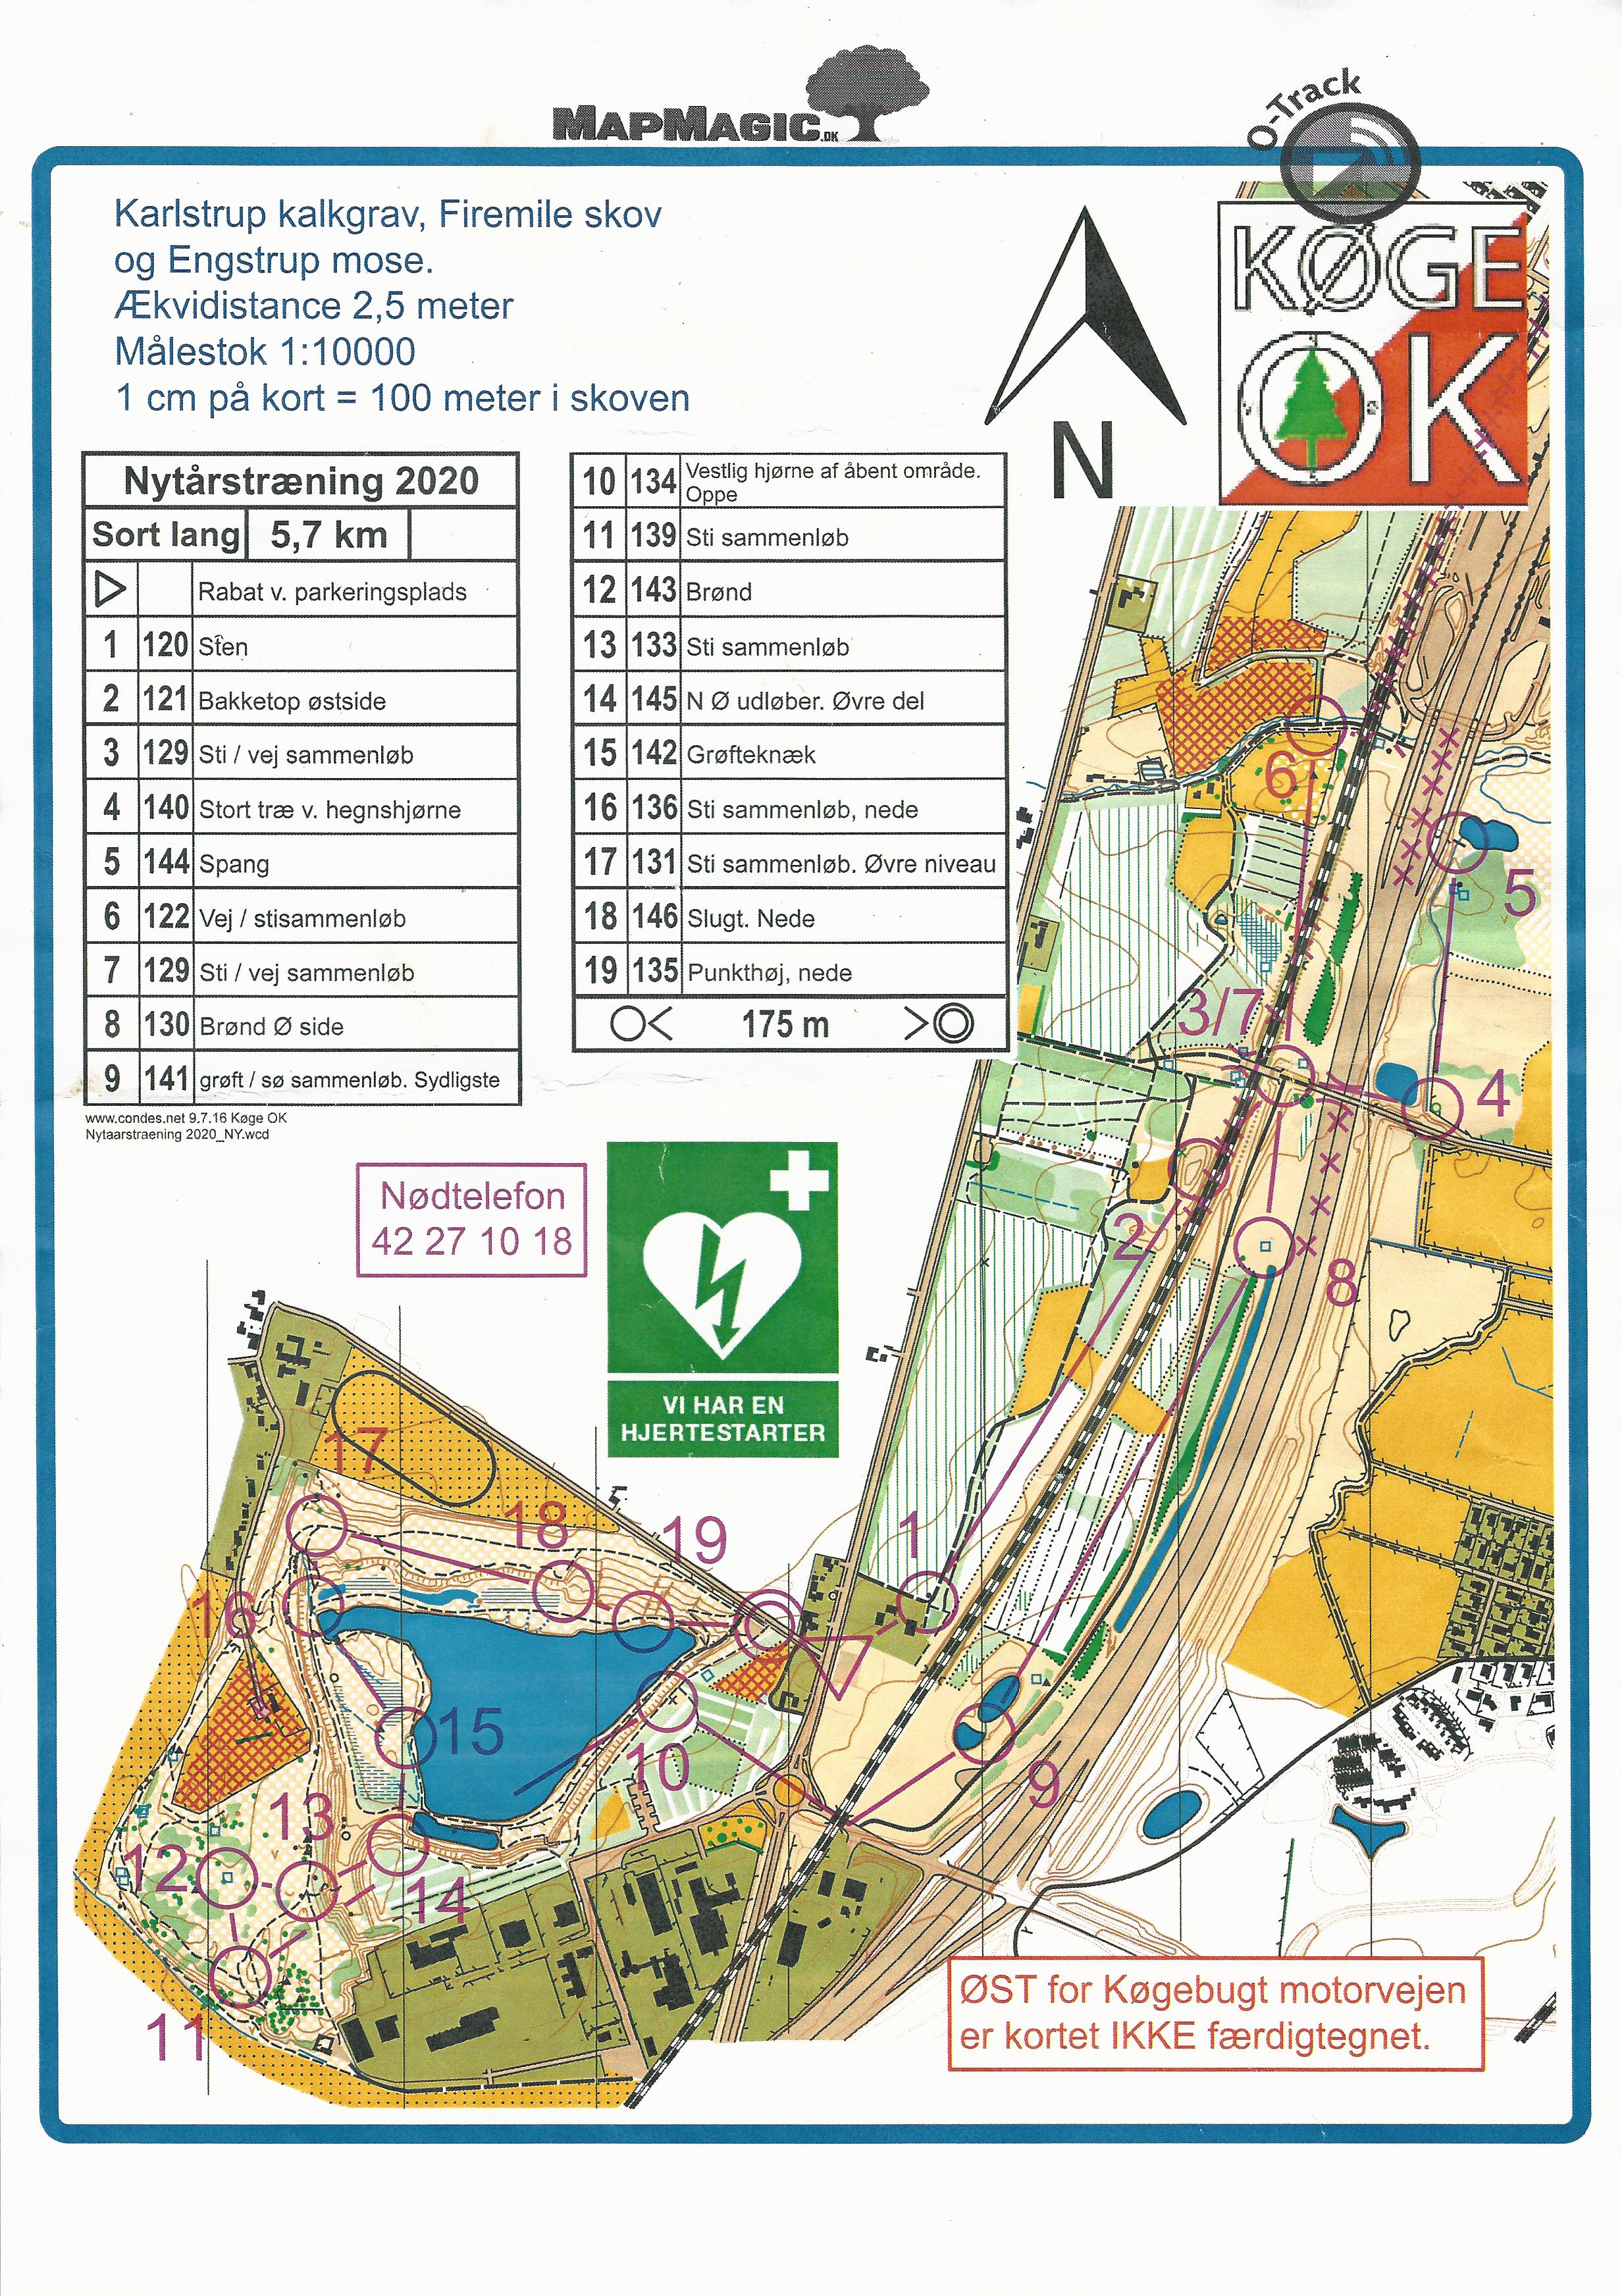 Nytårstræningsløb, Karlstrup Kalkgrav, Sort Lang (05-01-2020)